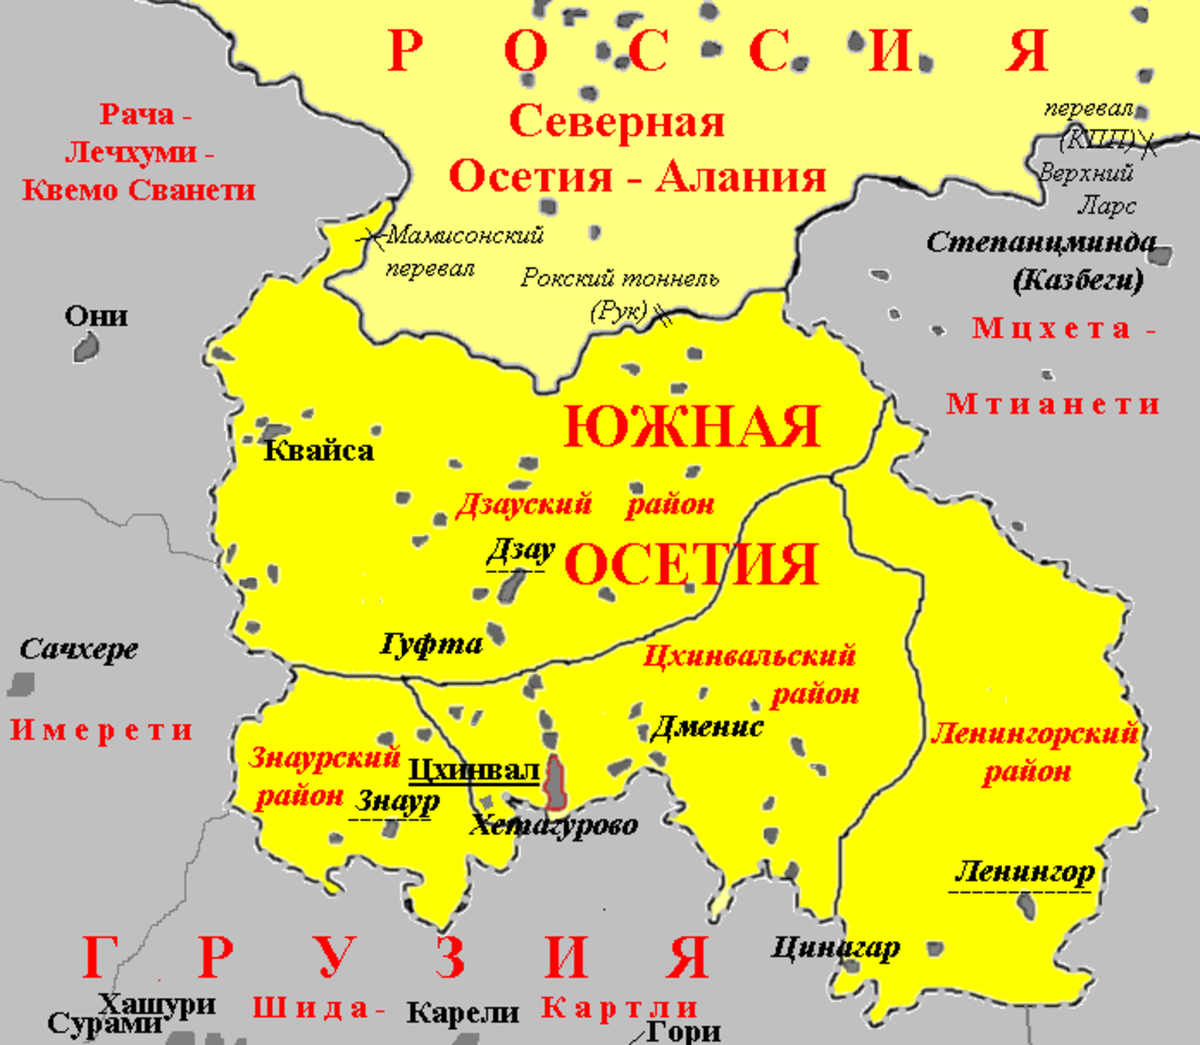 Протяженность южной осетии. Карта Южная Осетия граница с Россией. Знаурский район Южная Осетия на карте. Границы Южной и Северной Осетии на карте. Южная Осетия на карте граница.